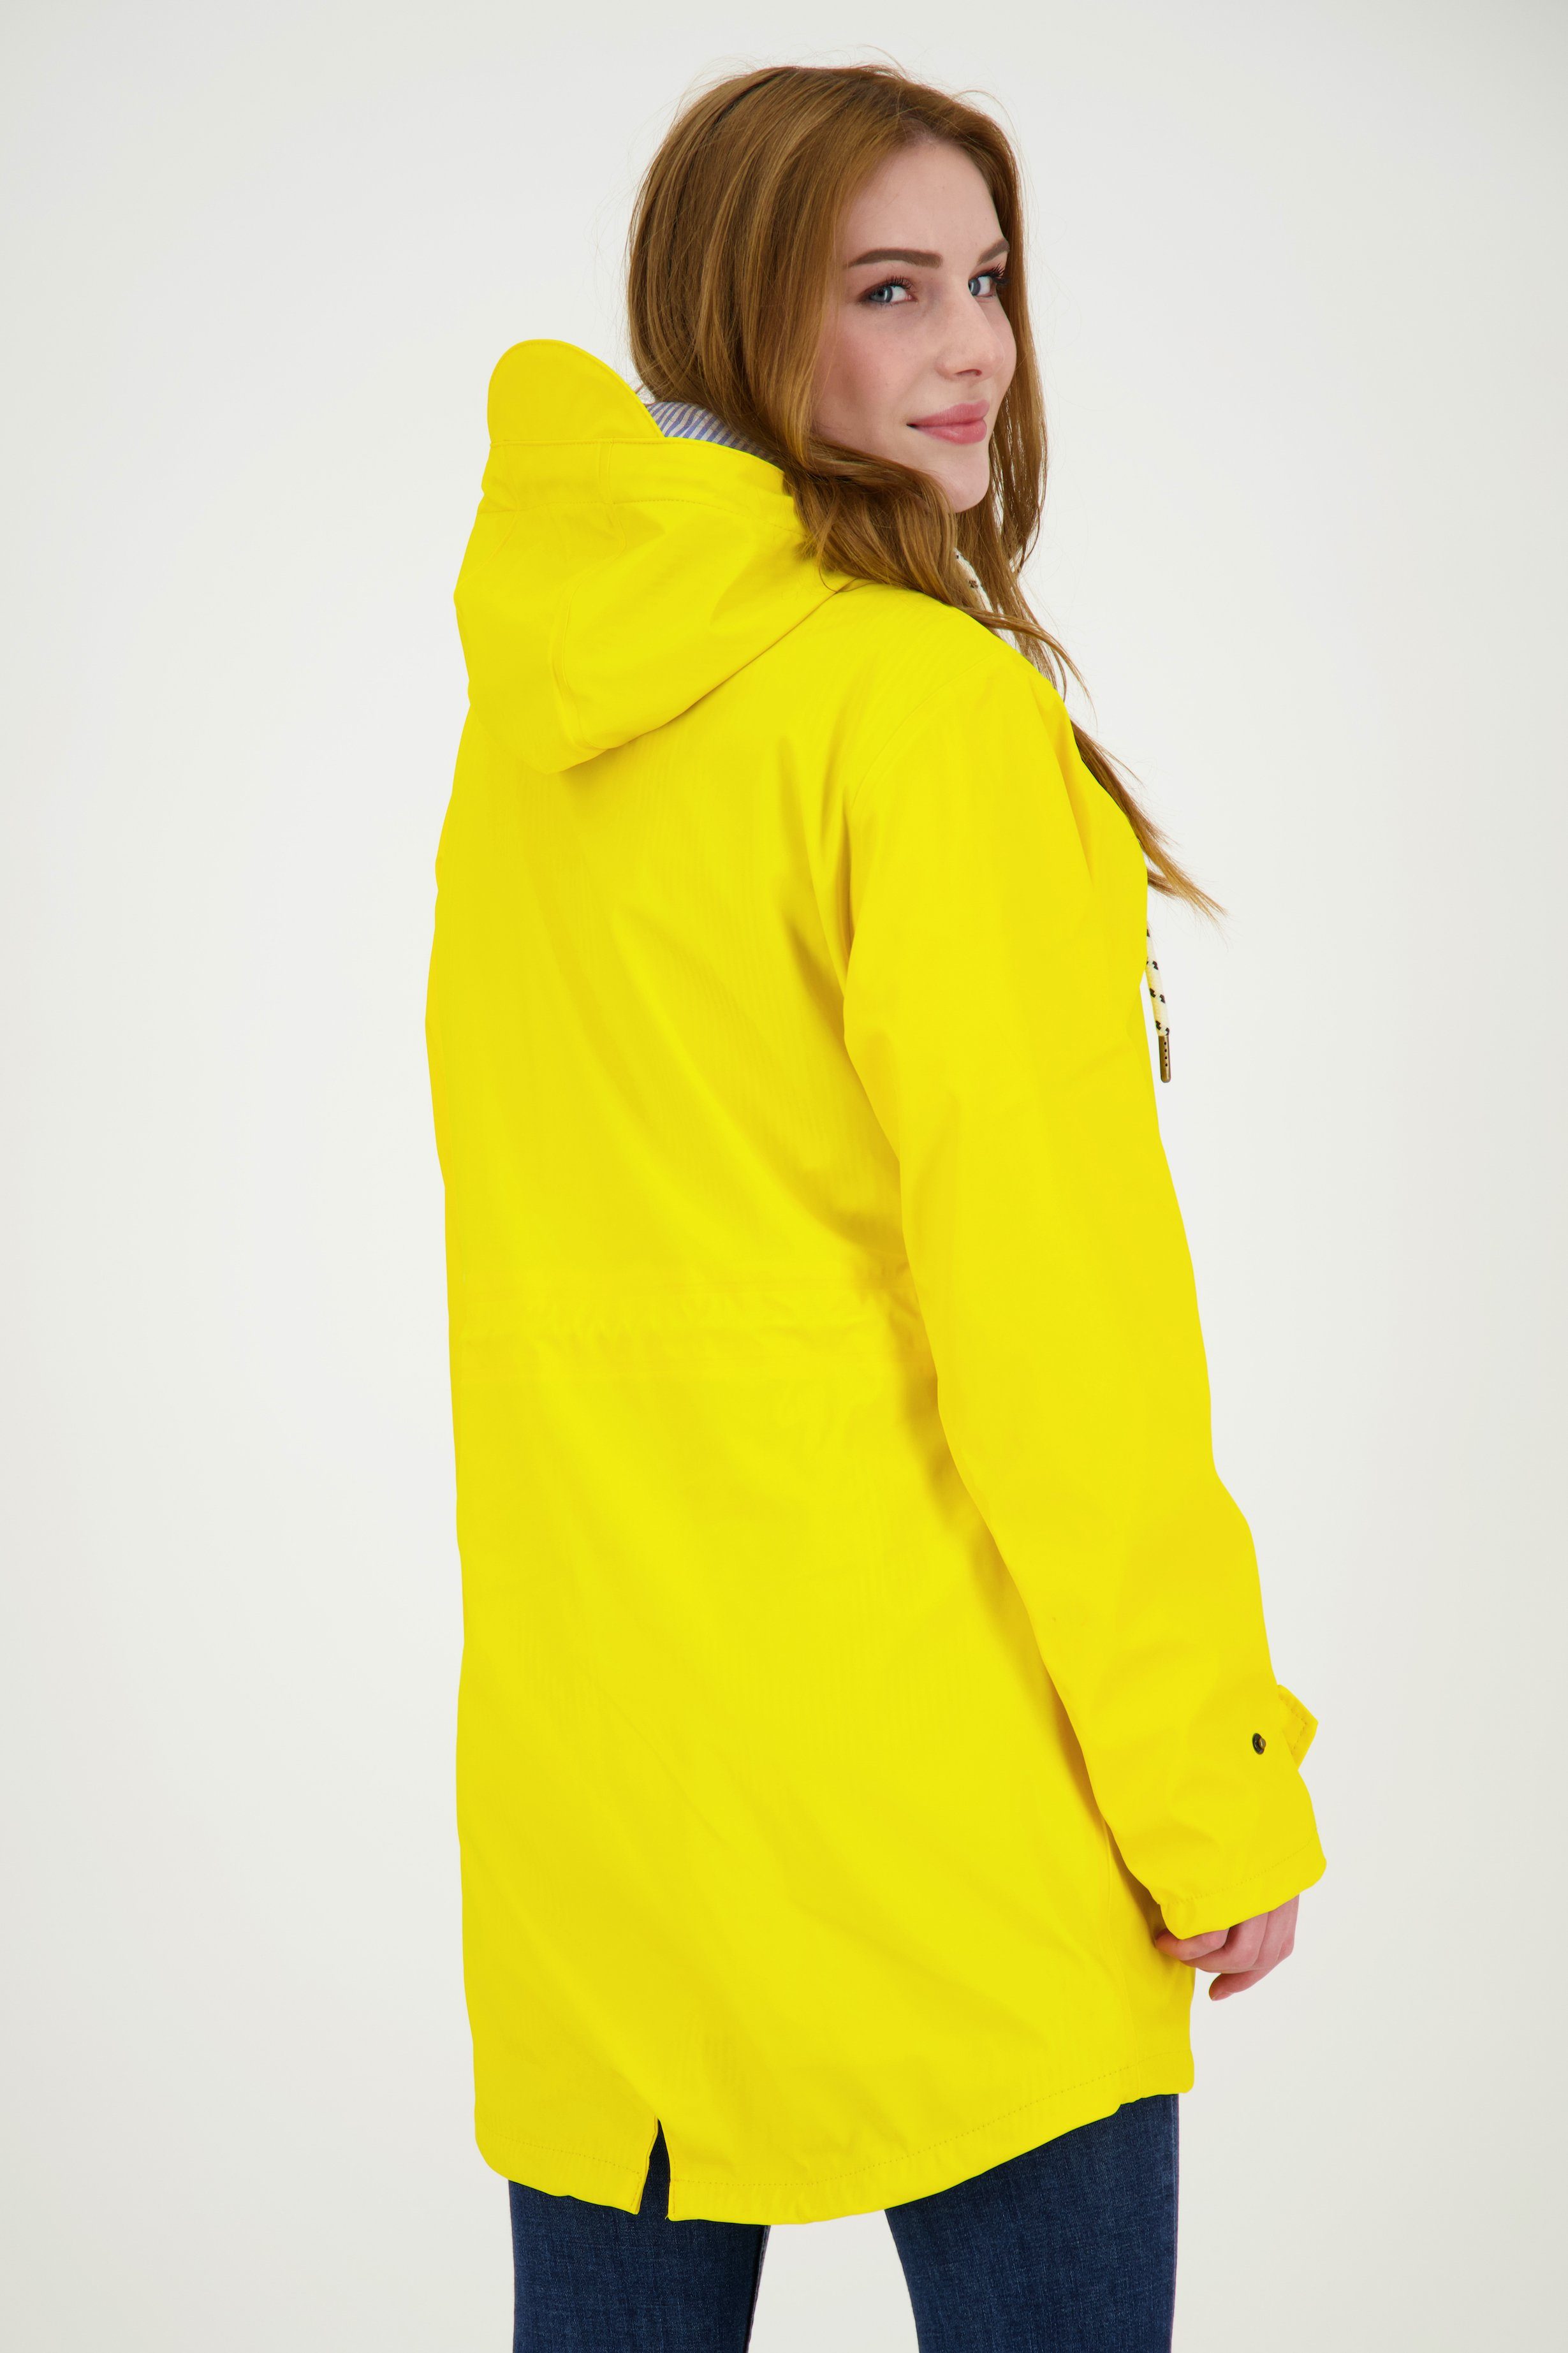 WOMEN auch Active in erhältlich PEAK Großen Regenjacke Größen UNI DEPROC gelb LOVE Friesennerz